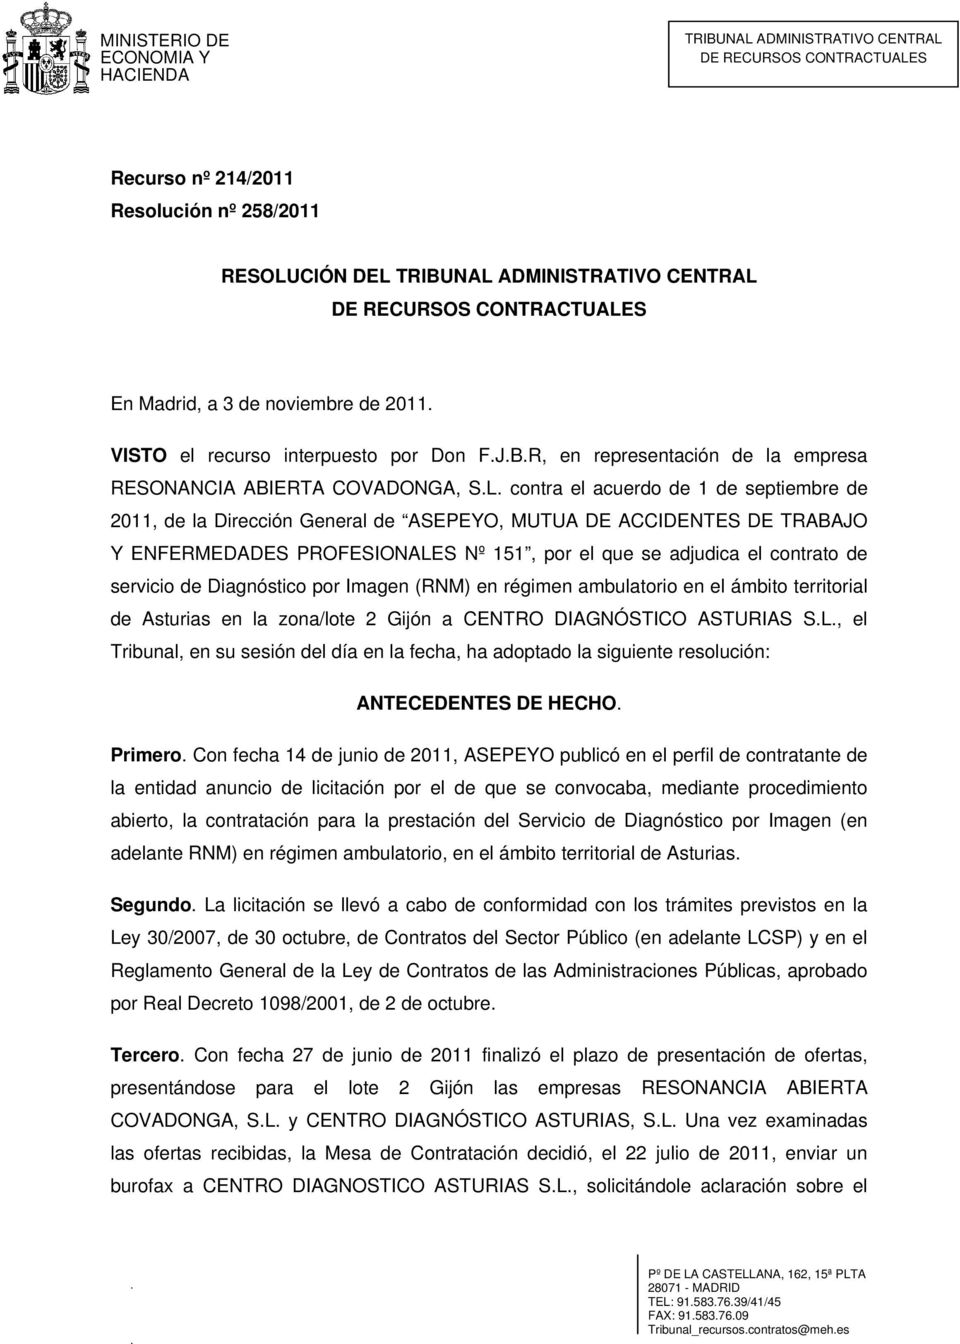 contra el acuerdo de 1 de septiembre de 2011, de la Dirección General de ASEPEYO, MUTUA DE ACCIDENTES DE TRABAJO Y ENFERMEDADES PROFESIONALES Nº 151, por el que se adjudica el contrato de servicio de